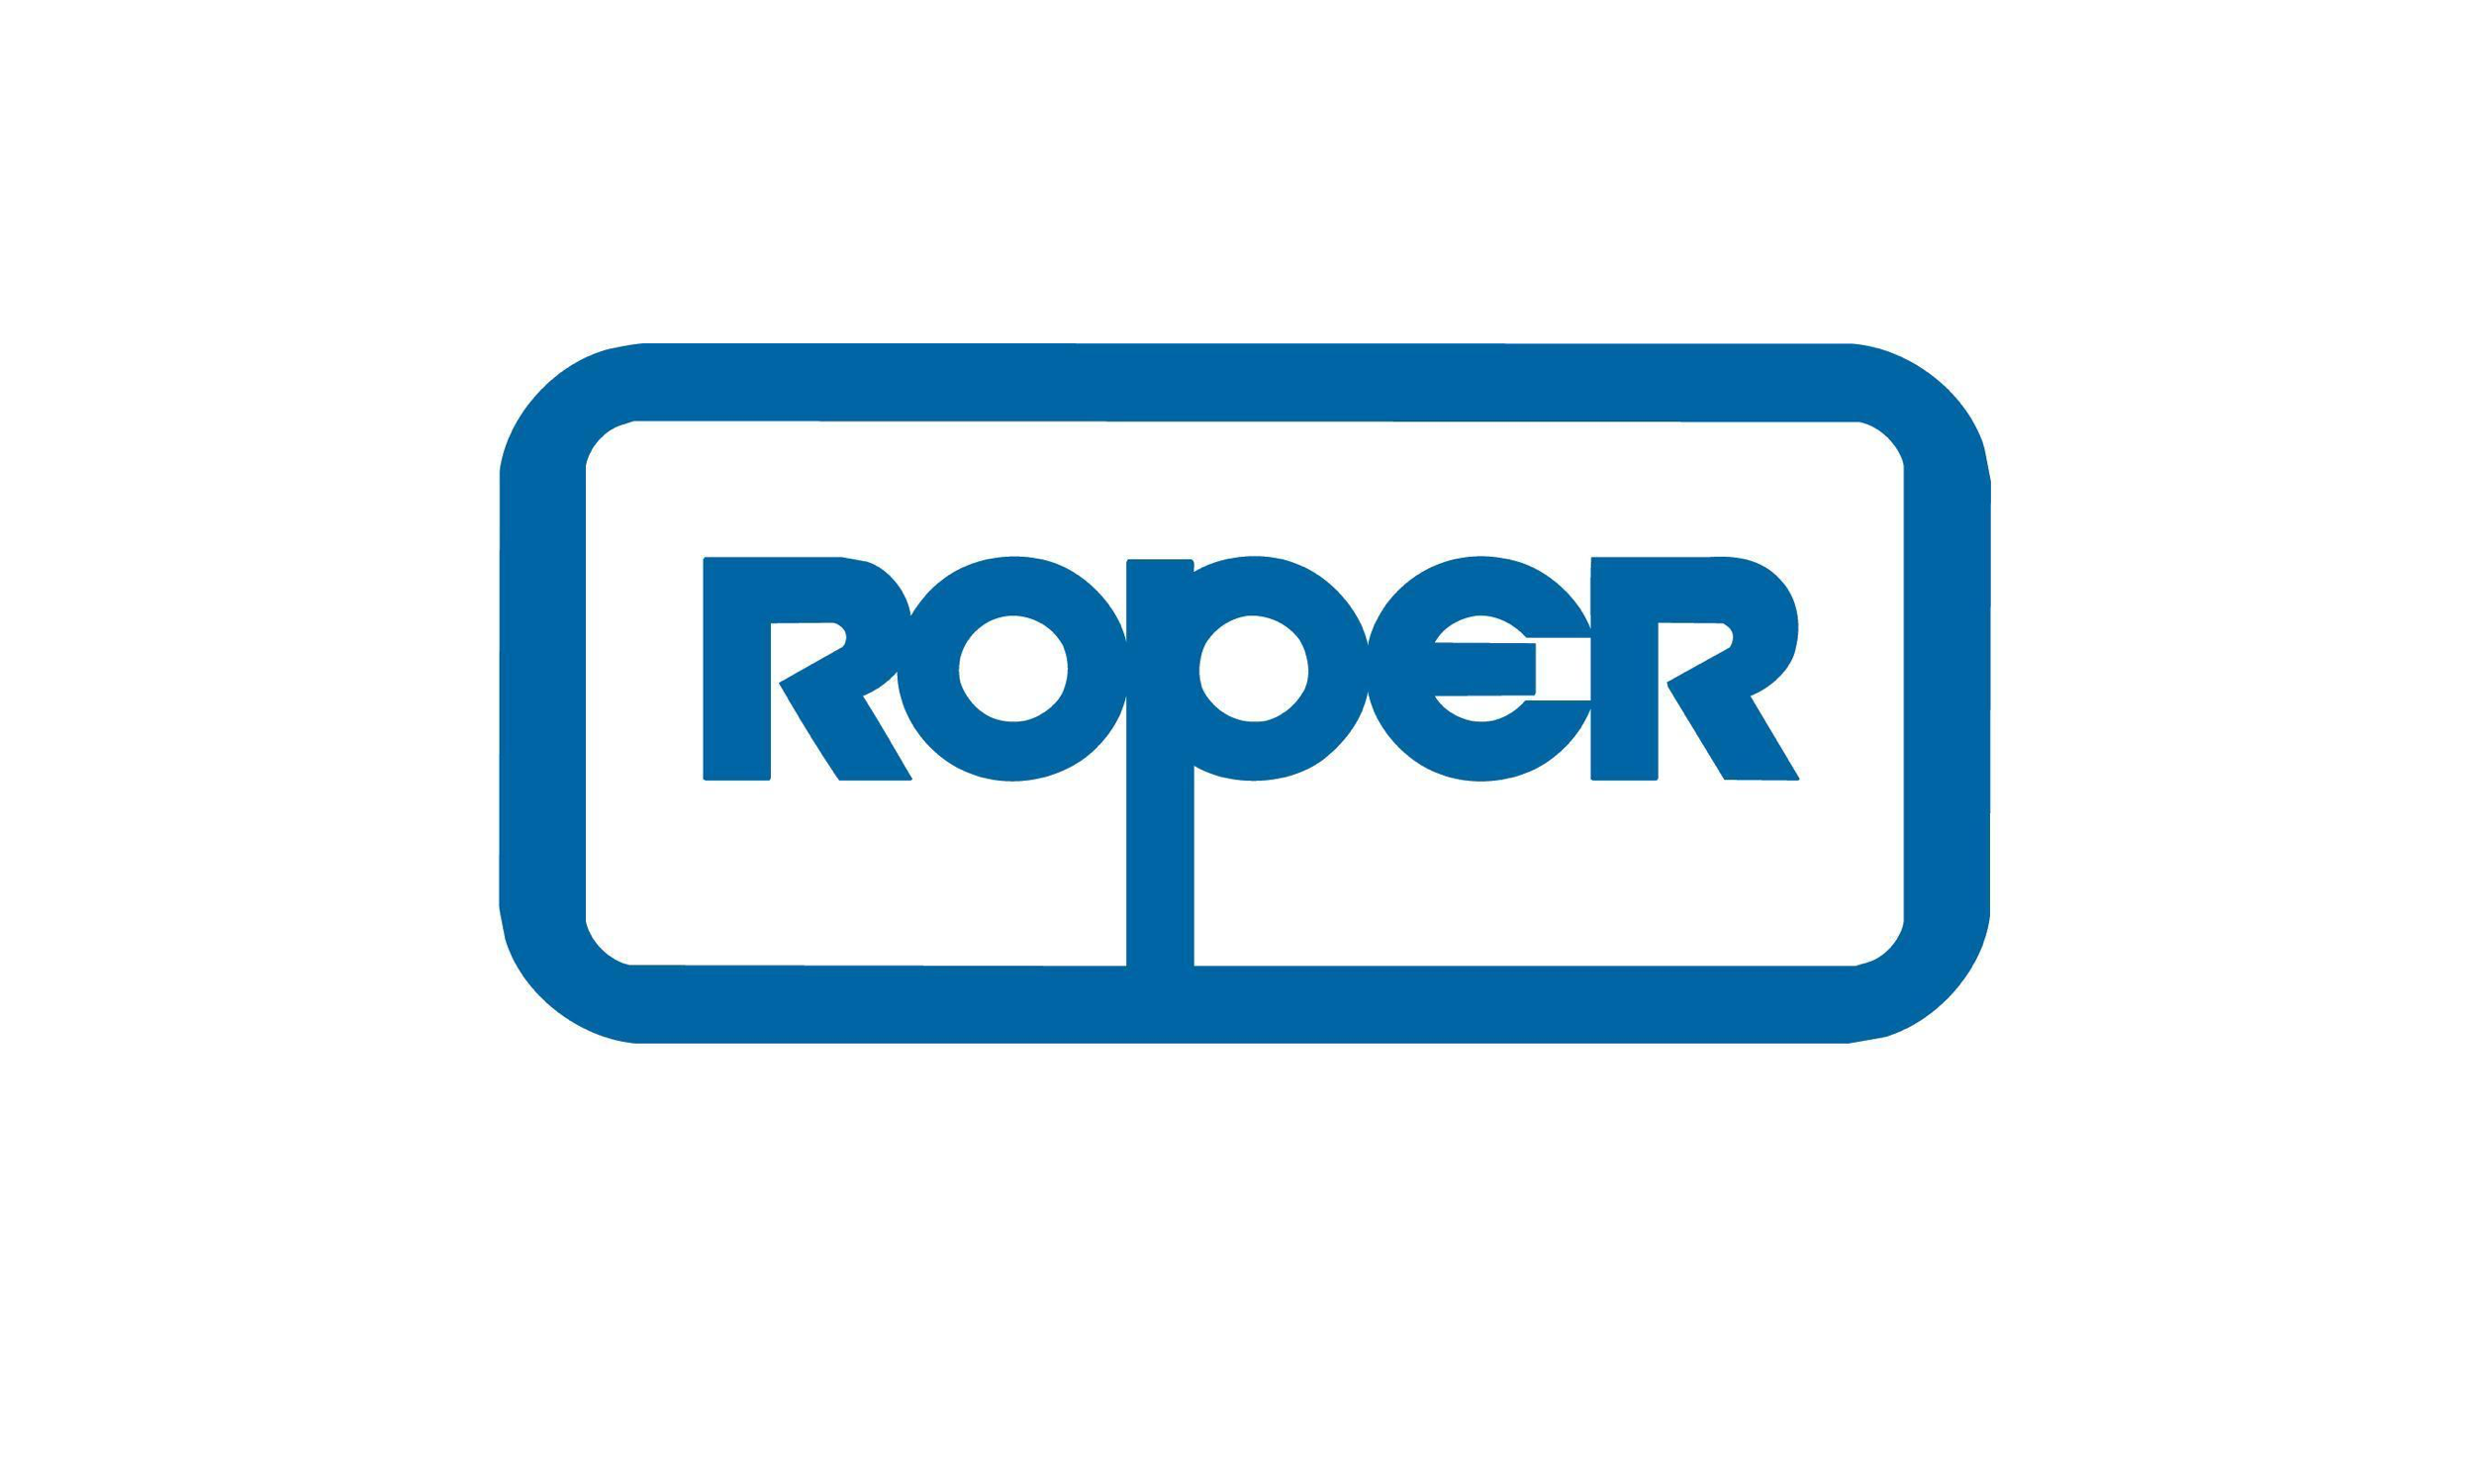 Roper logo